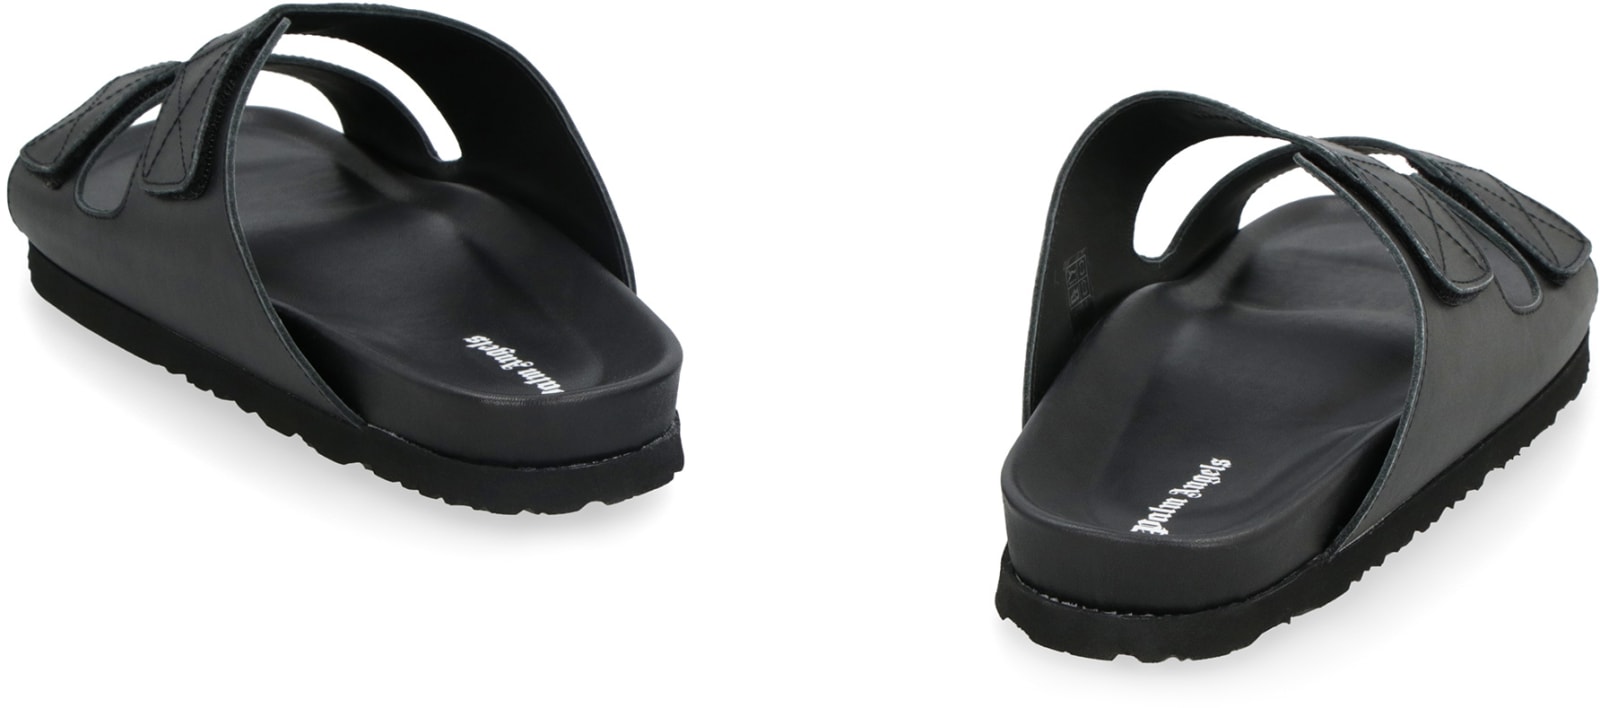 Palm Angels Logo Print Double Strap Sandals - Black